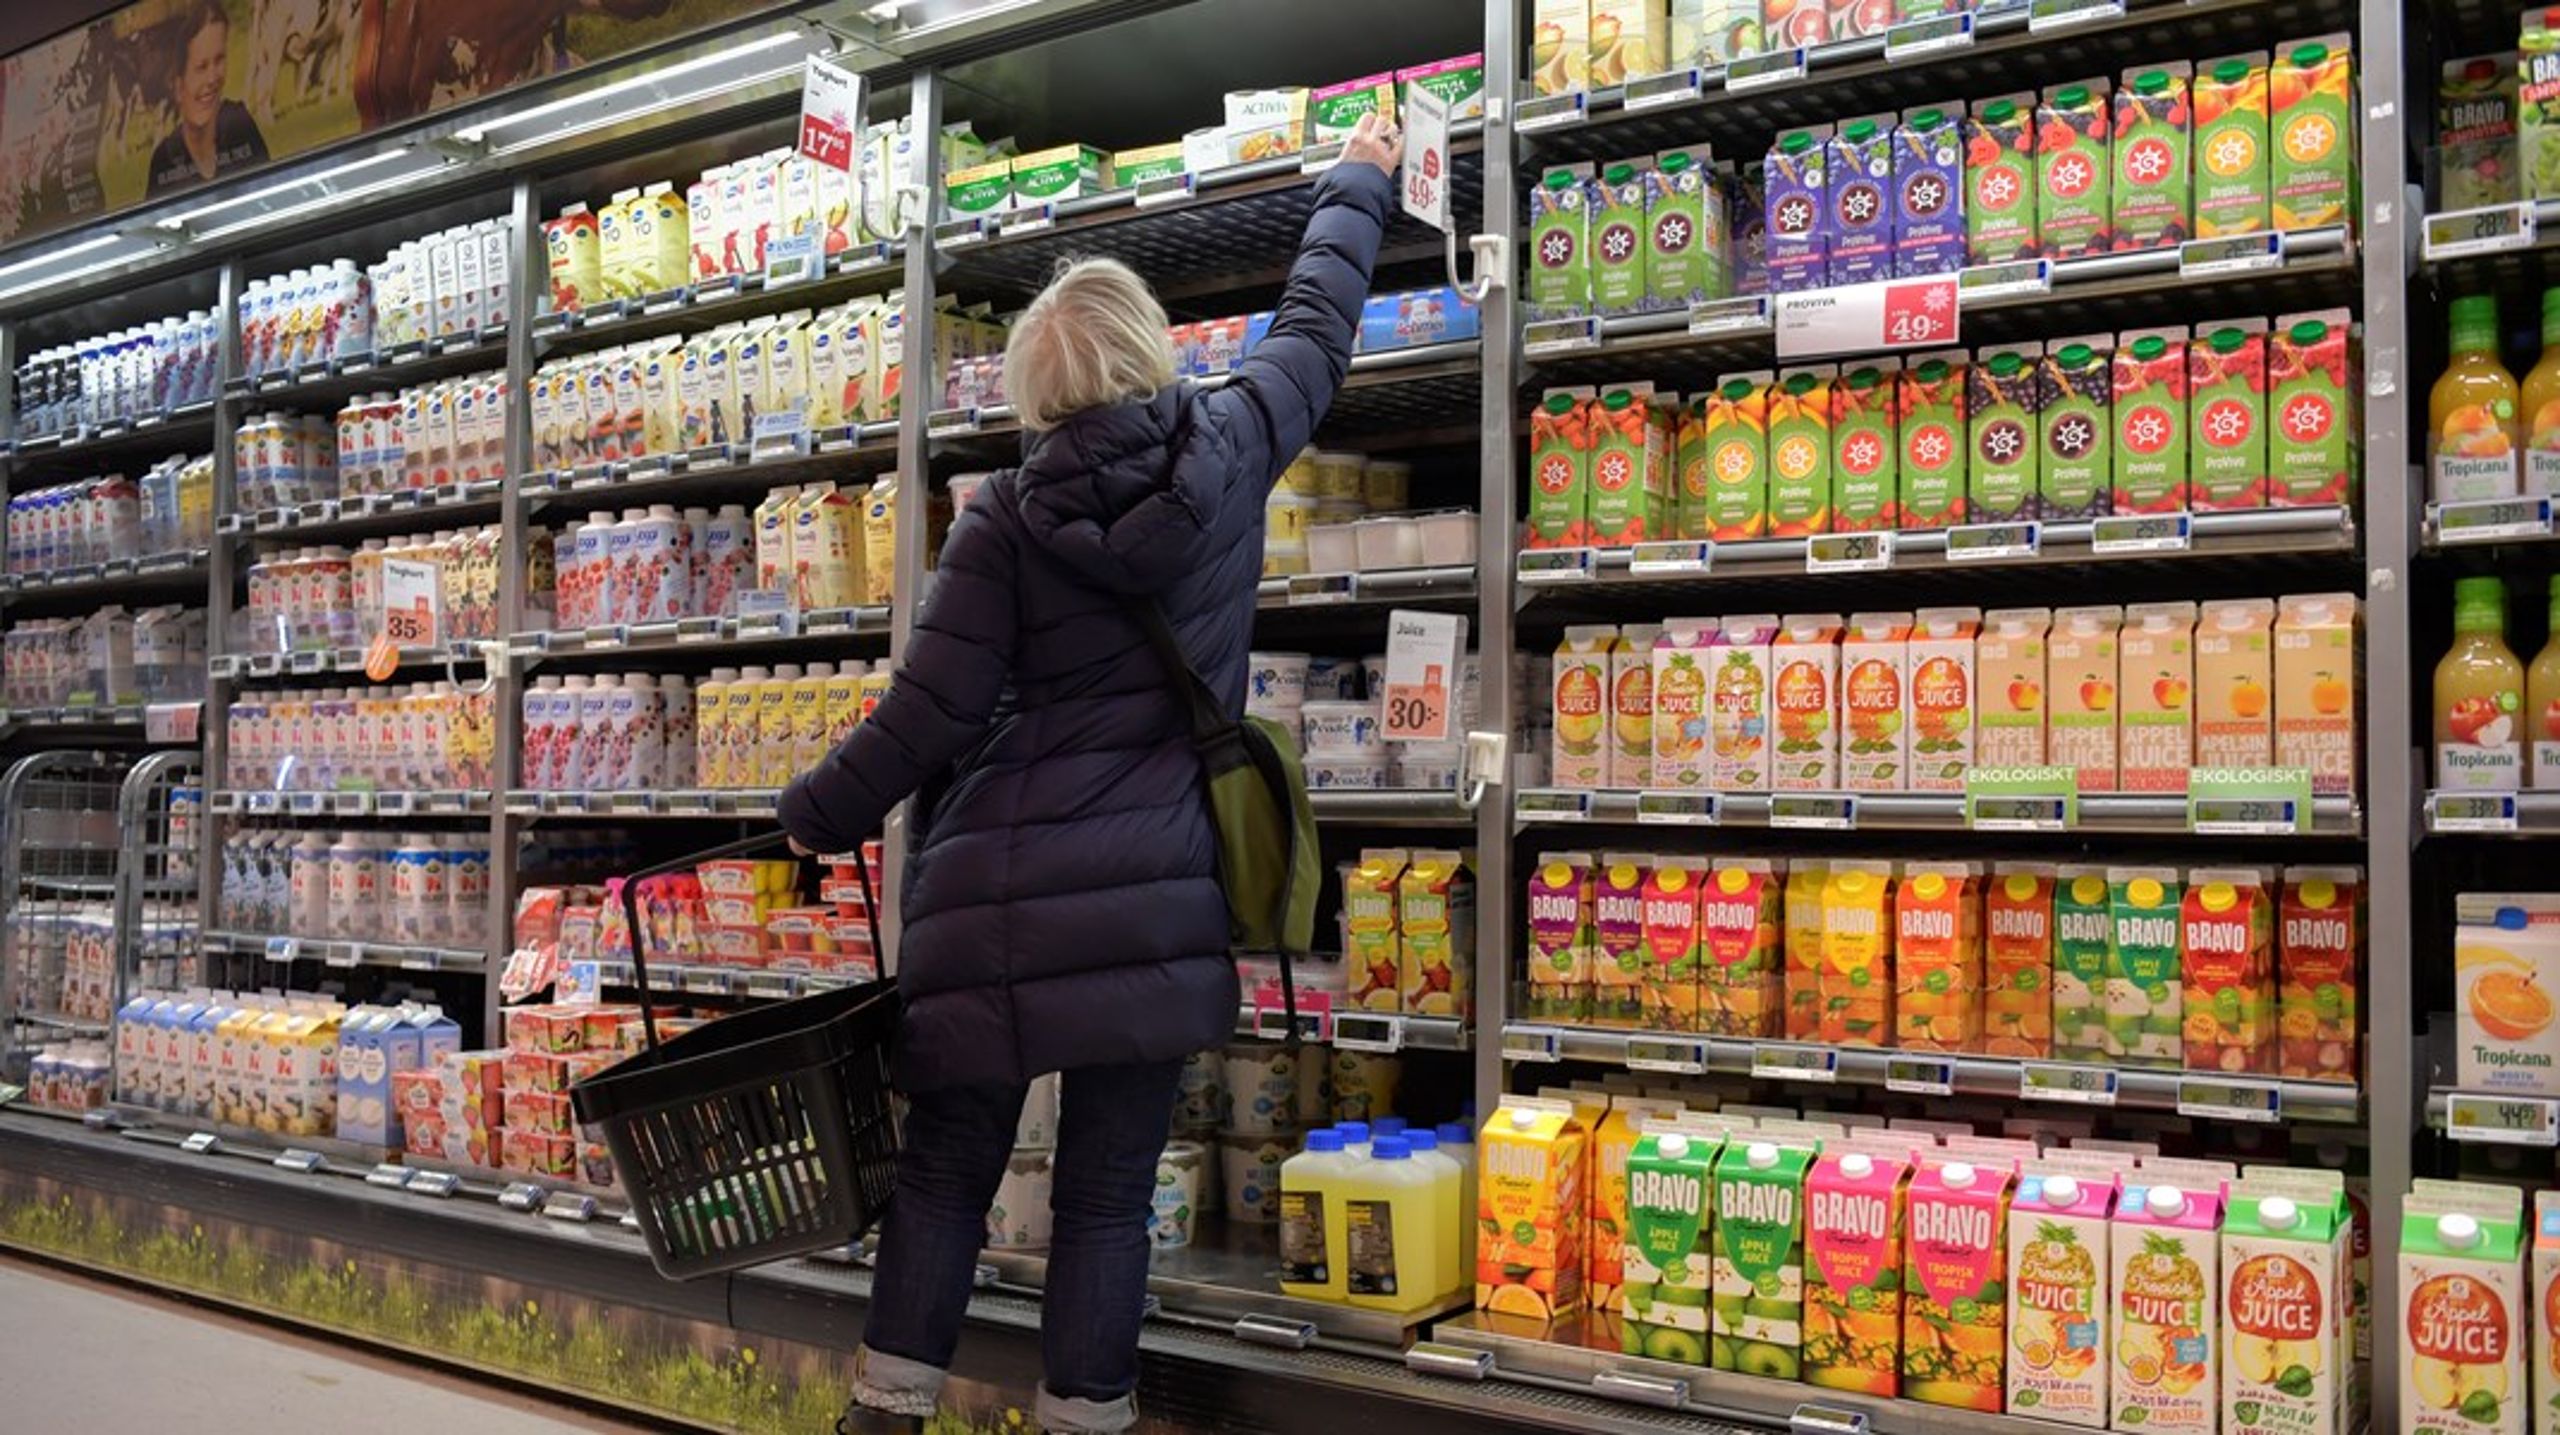 "De stora kedjornas makt har lett till att metoder som är otänkbara på andra marknader tillämpas gentemot svenska livsmedelsproducenter."